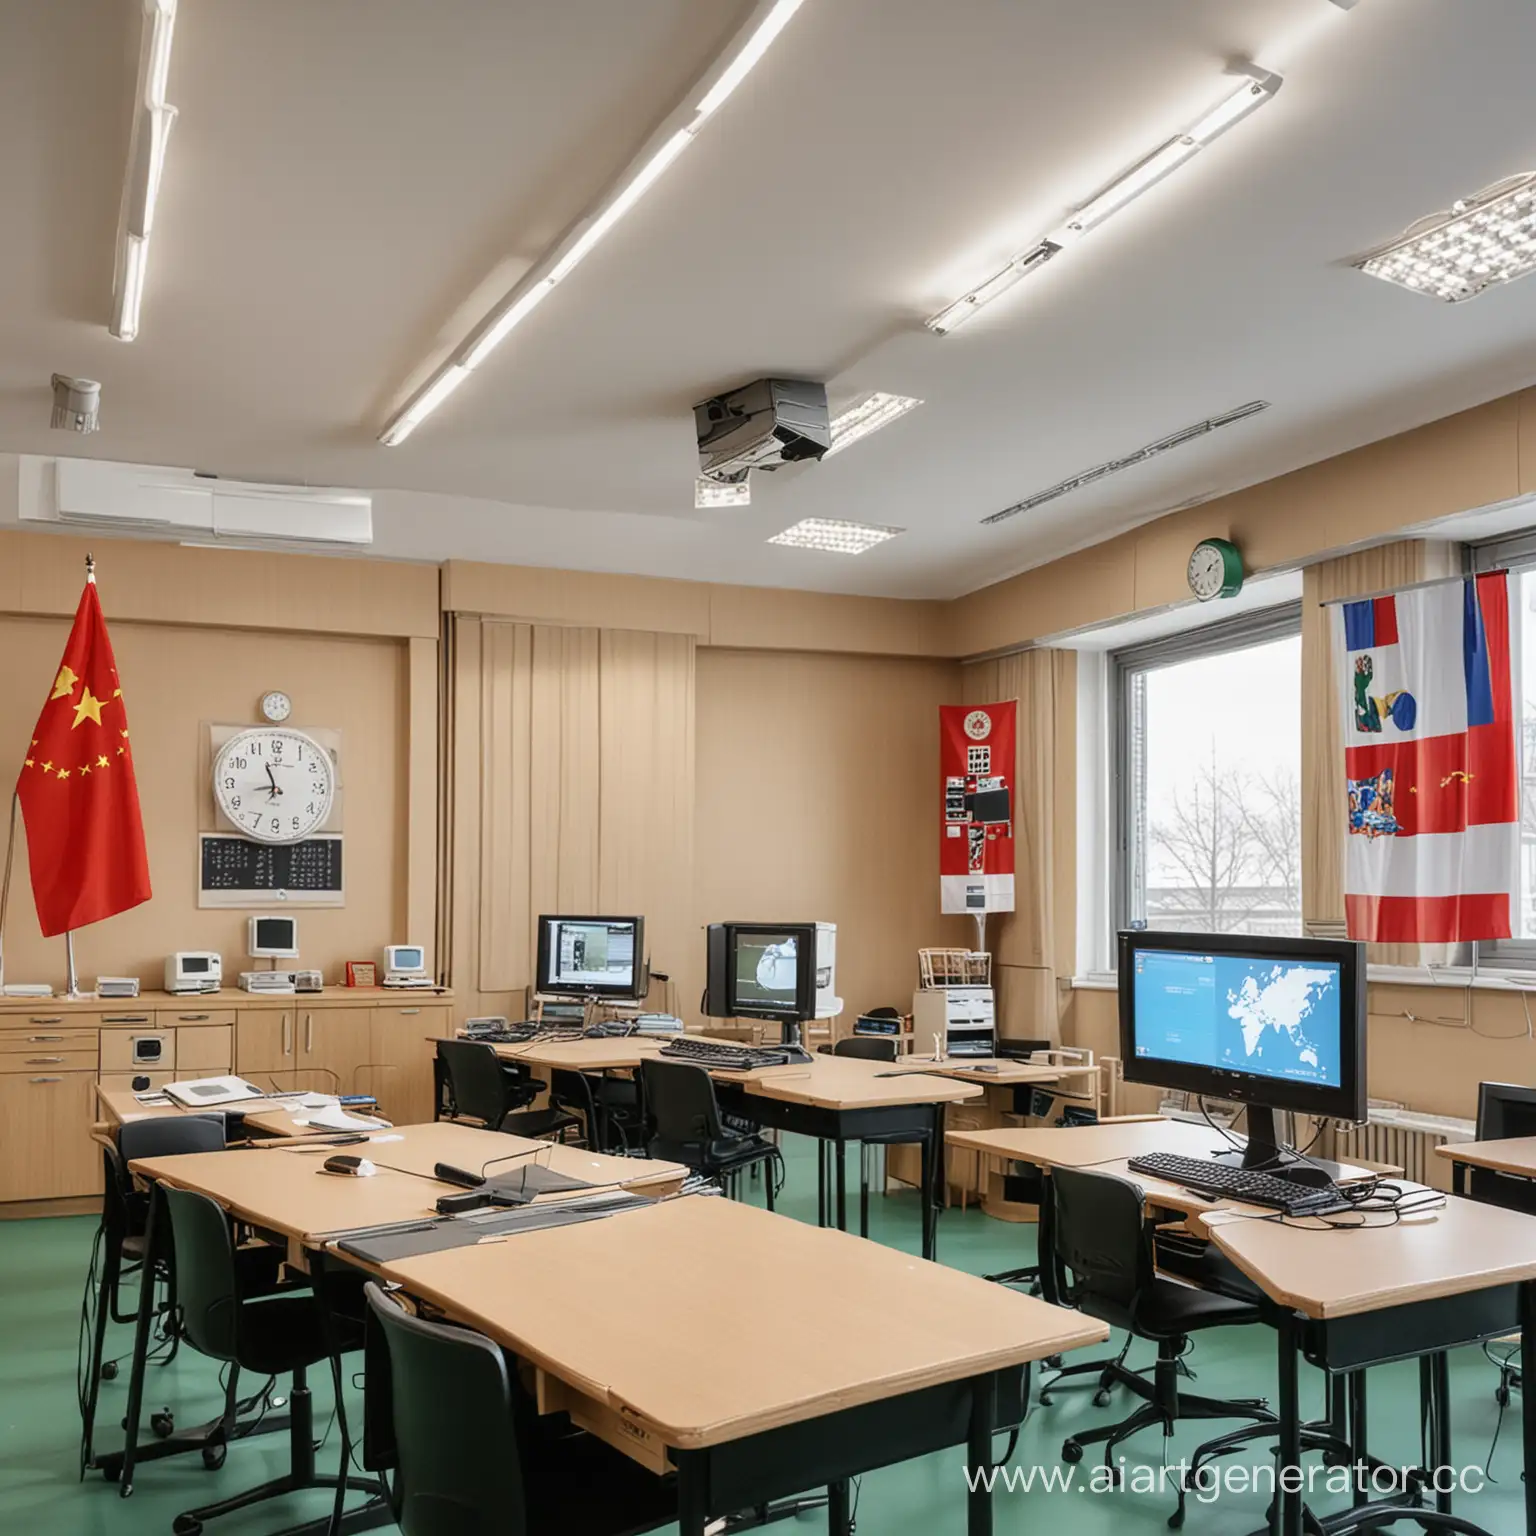 Современный школьный кабинет. На партах лежат компьютеры. Над интерактивной технологичной доской висят часы. Рядом с часами флаги РФ, Китая и Британии. В кабинете стоит шкаф с гаджетами для обучения. 